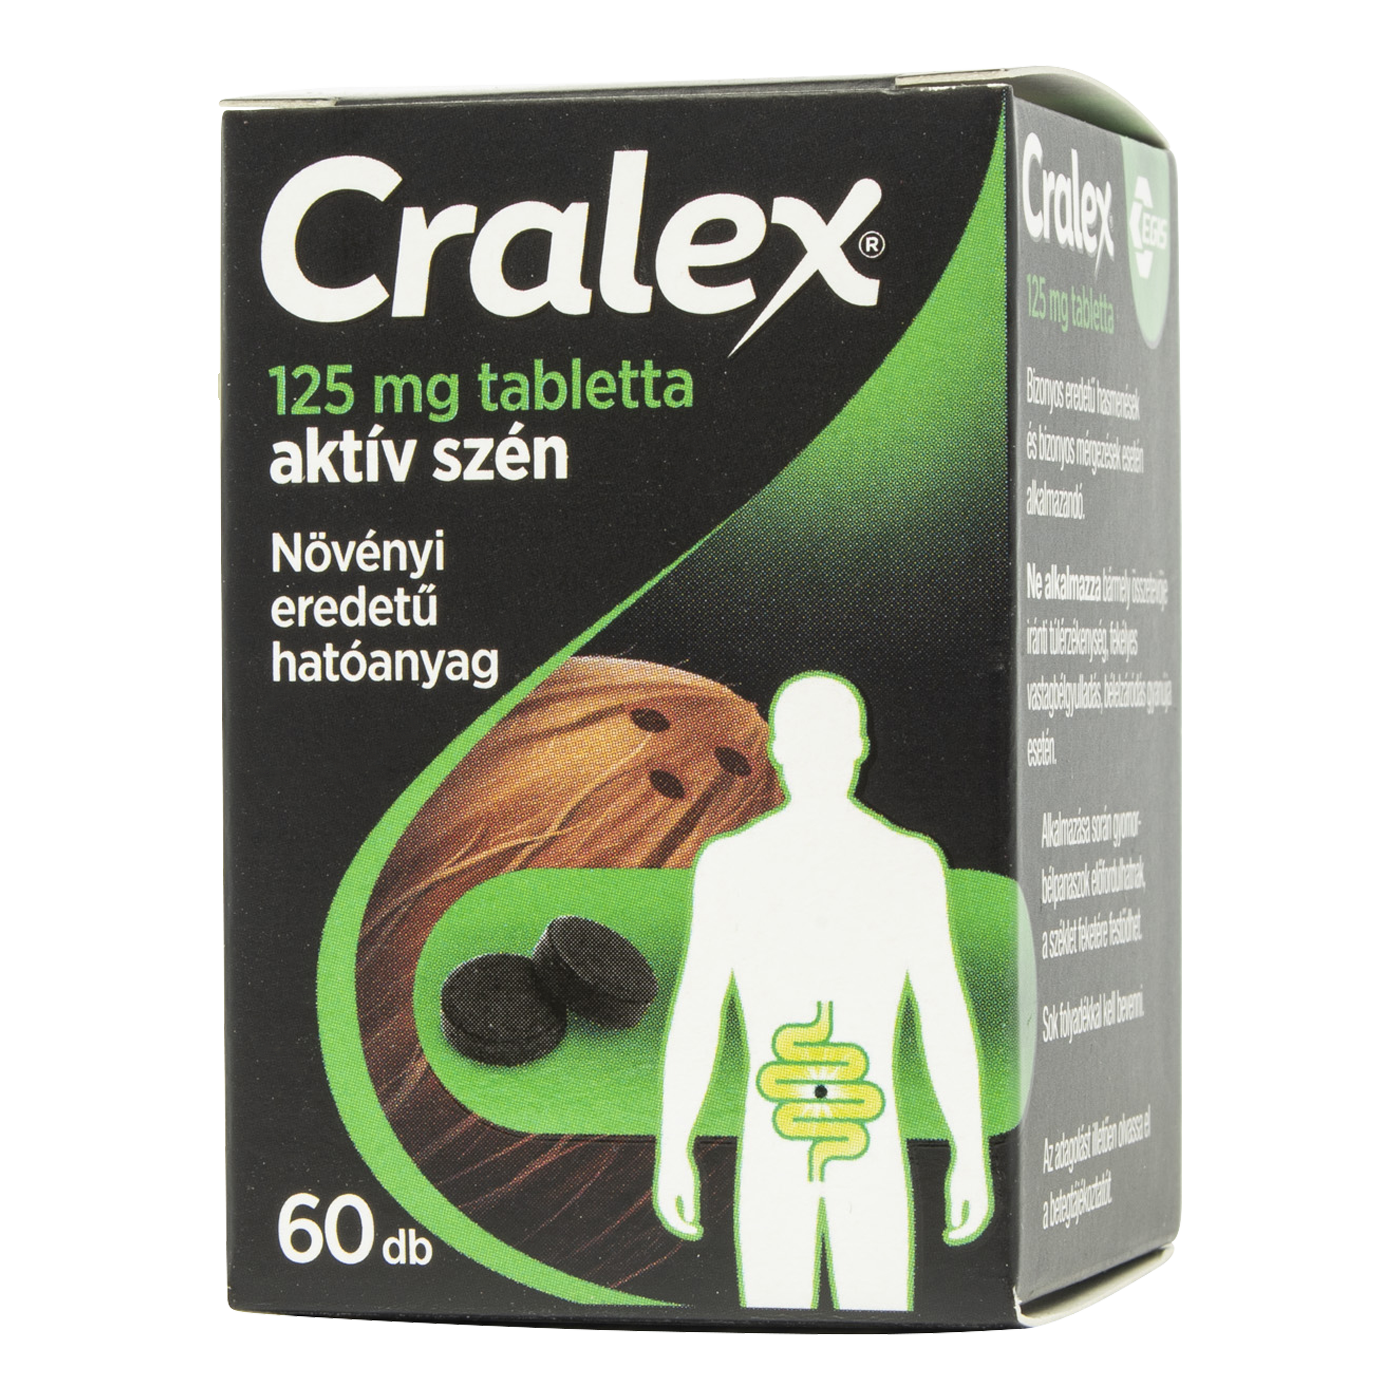 Cralex® 125 mg tabletta, 60 db